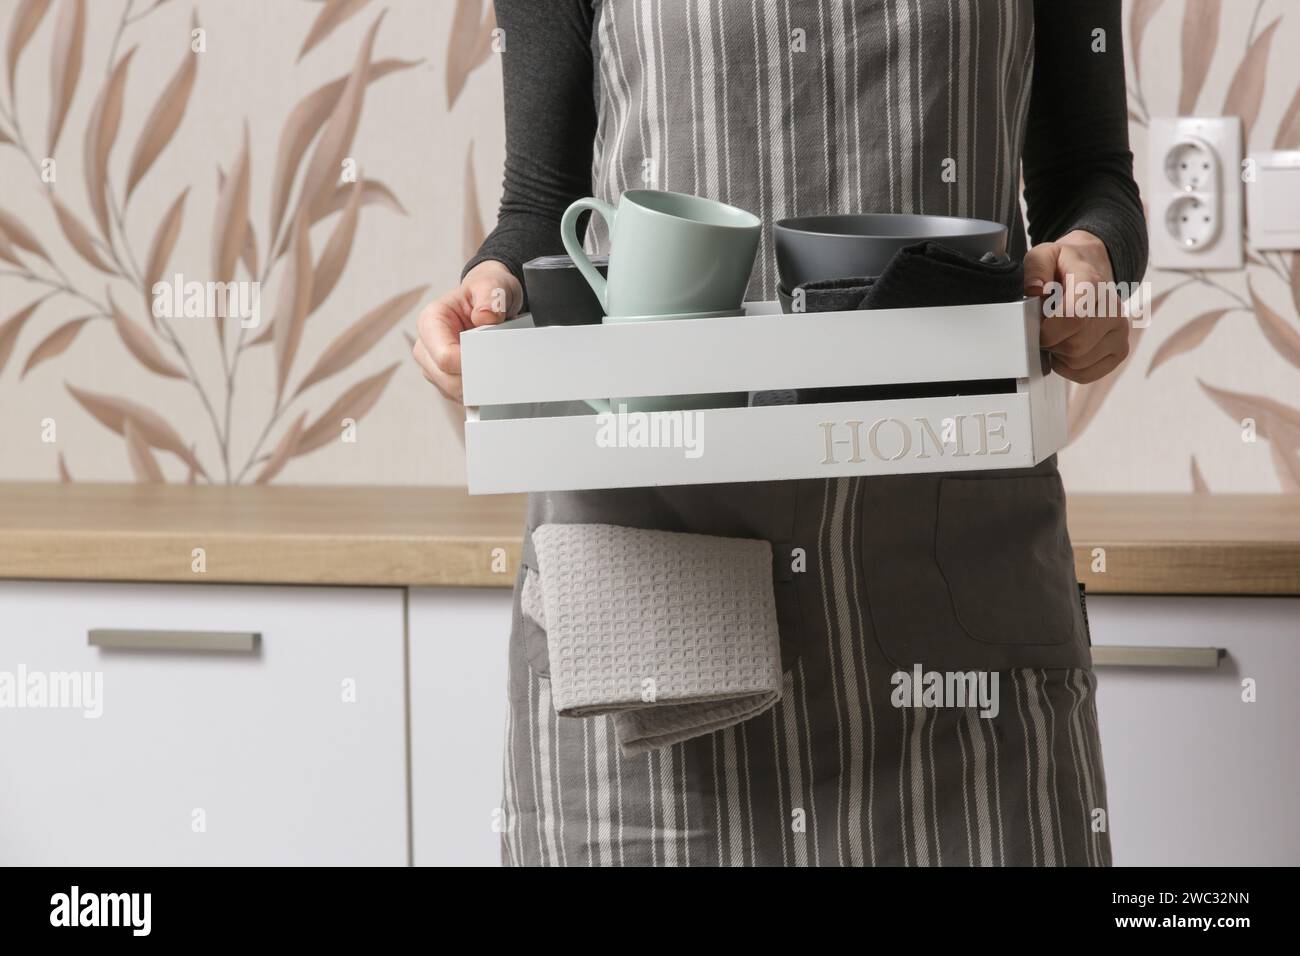 Hausfrau auf Schürze Geschirr aufräumen in Küche, Haushalt, allgemeine Organisation und Entwirrungskonzept Stockfoto